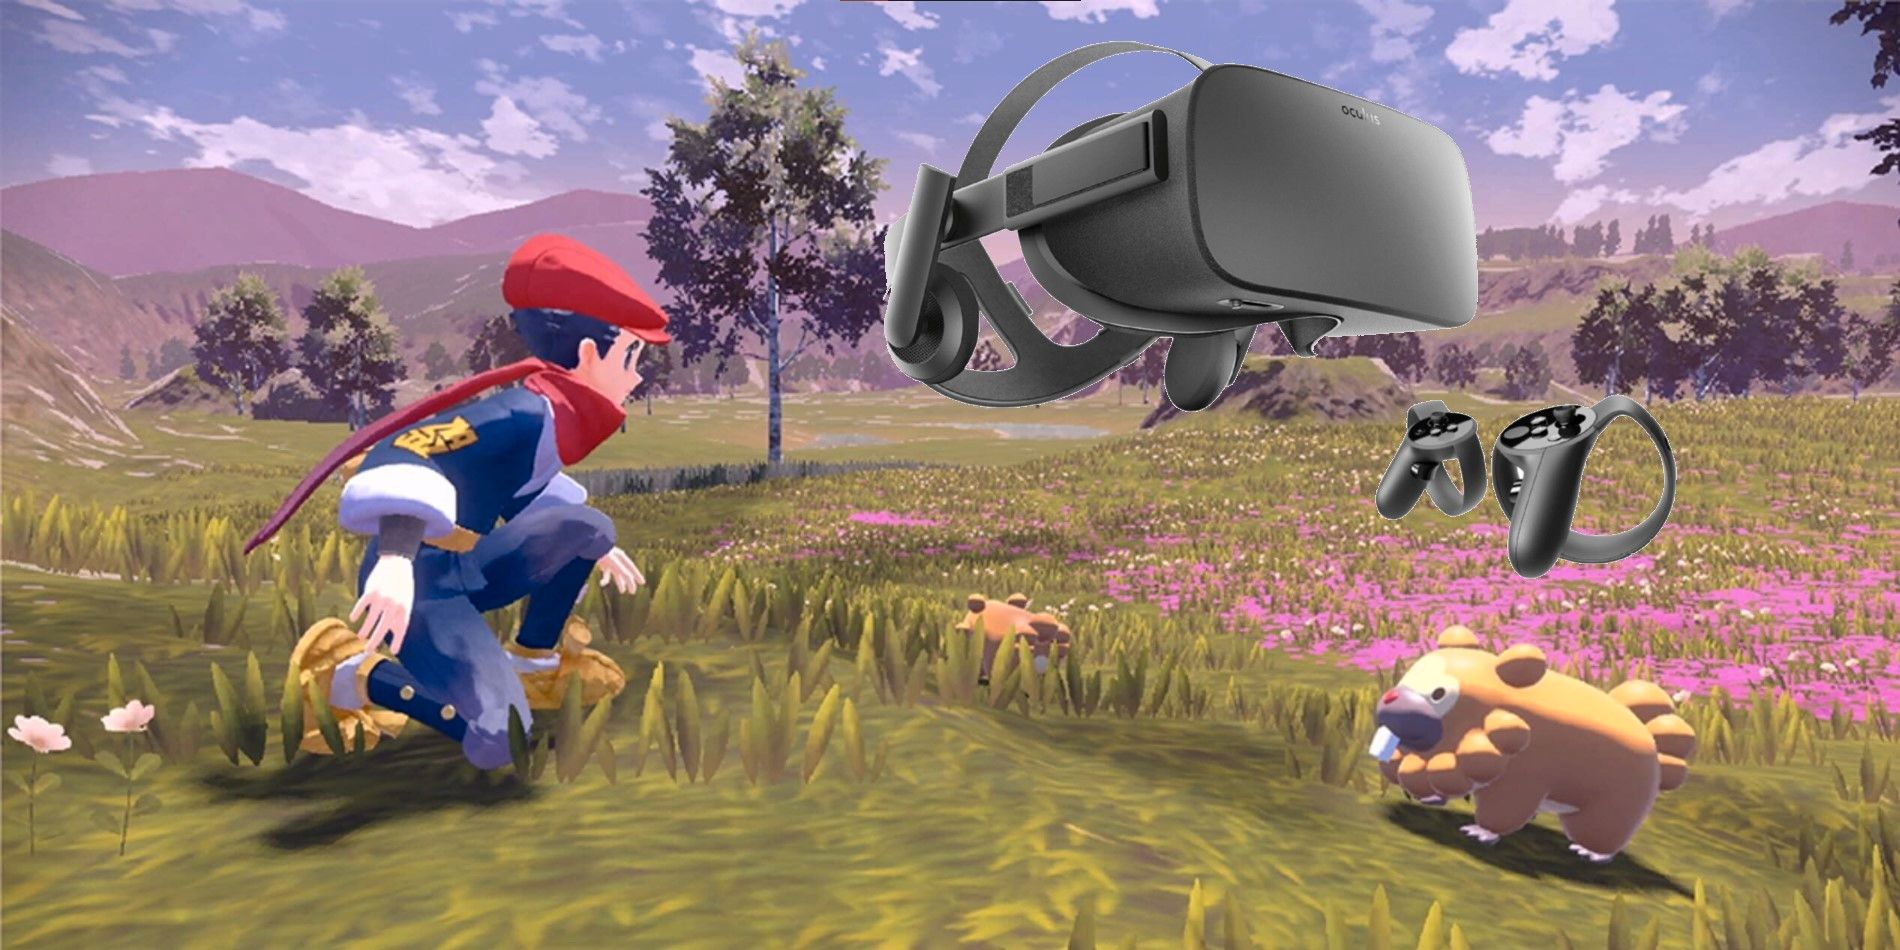 El próximo paso de Pokémon después de Legends: Arceus debe ser realidad virtual